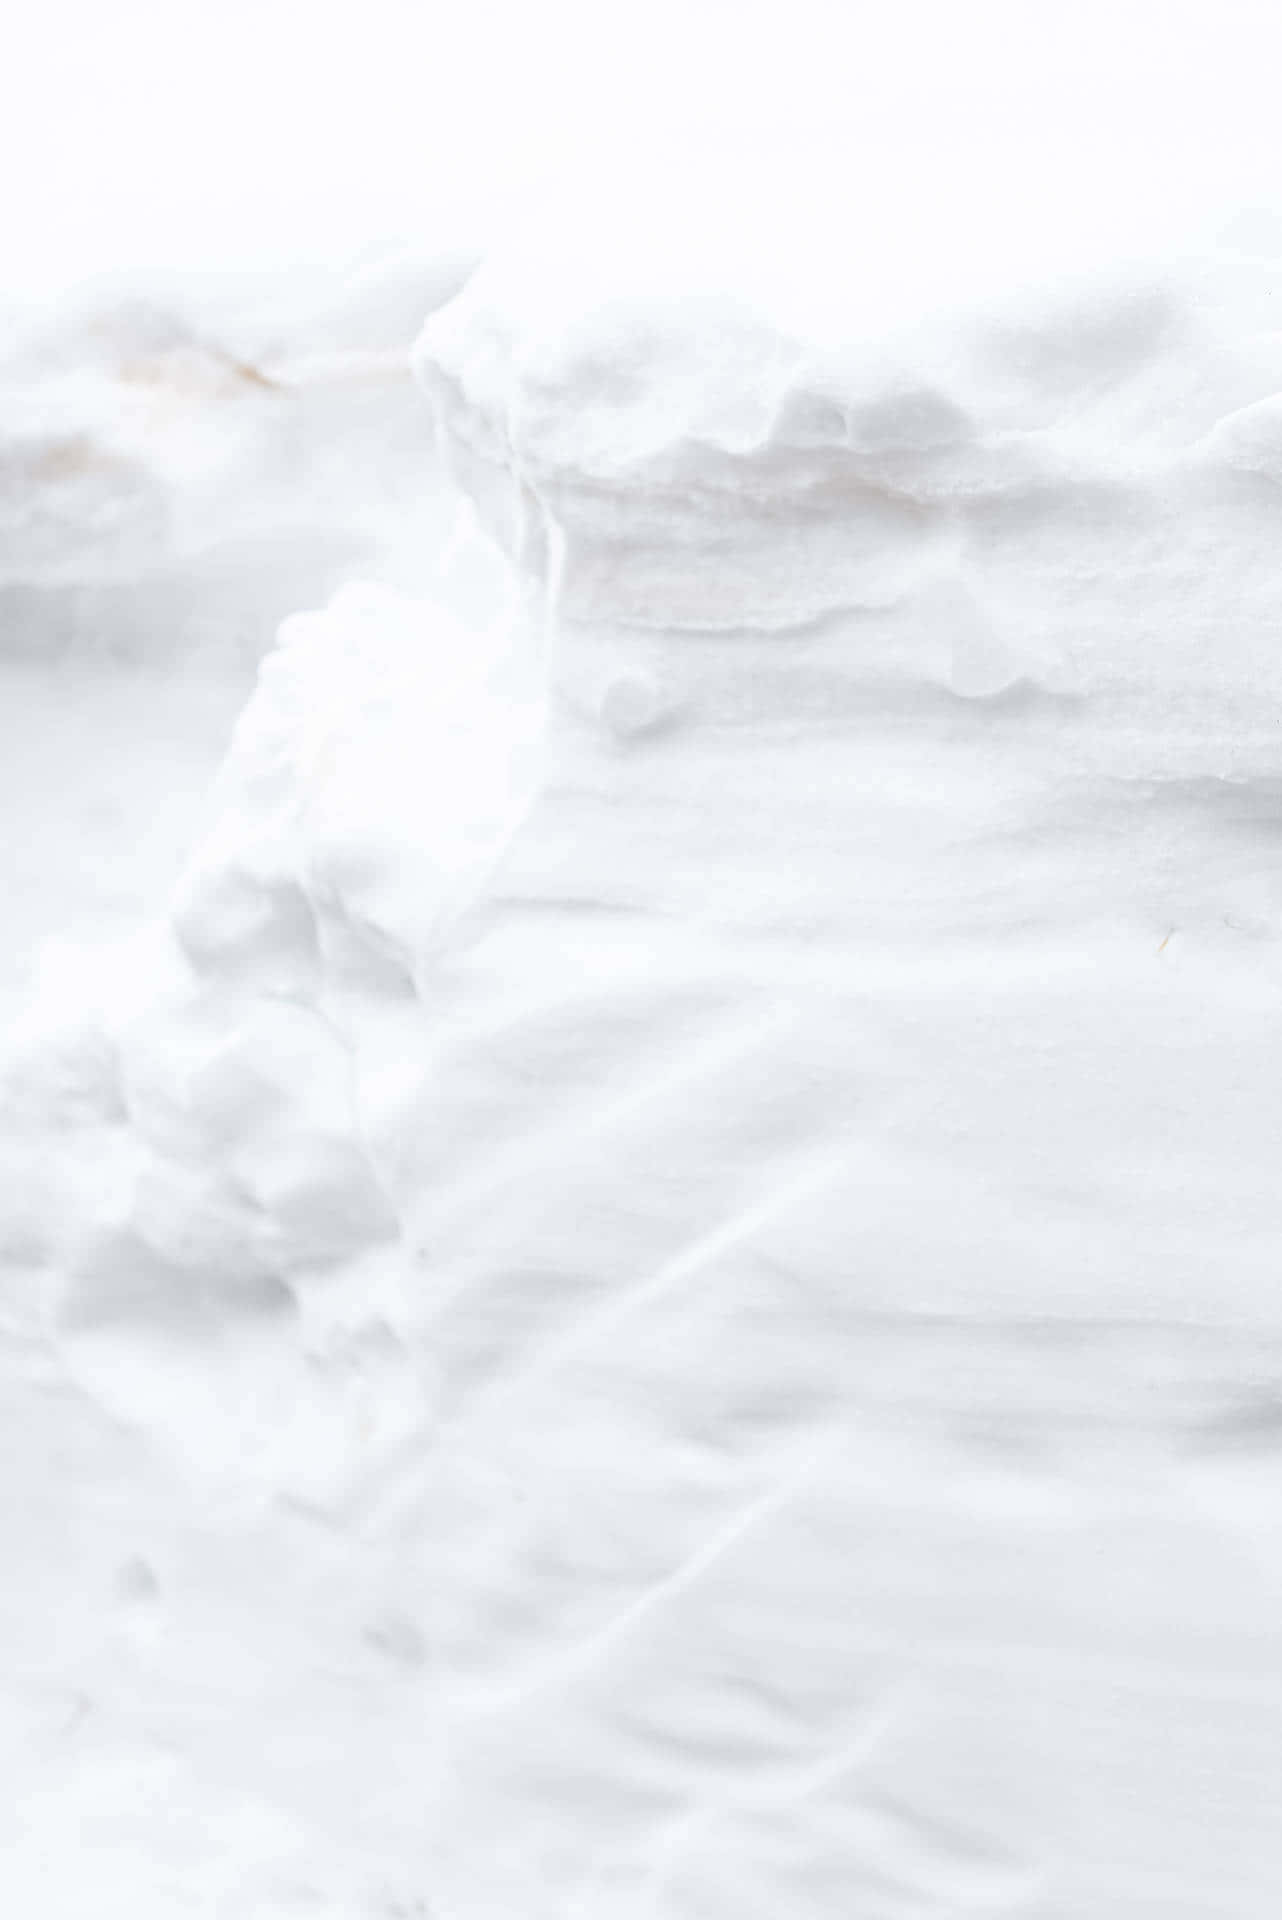 Un'immaginedi Una Tranquilla Coperta Di Neve Bianca Che Ricopre Un Campo Di Alberi.